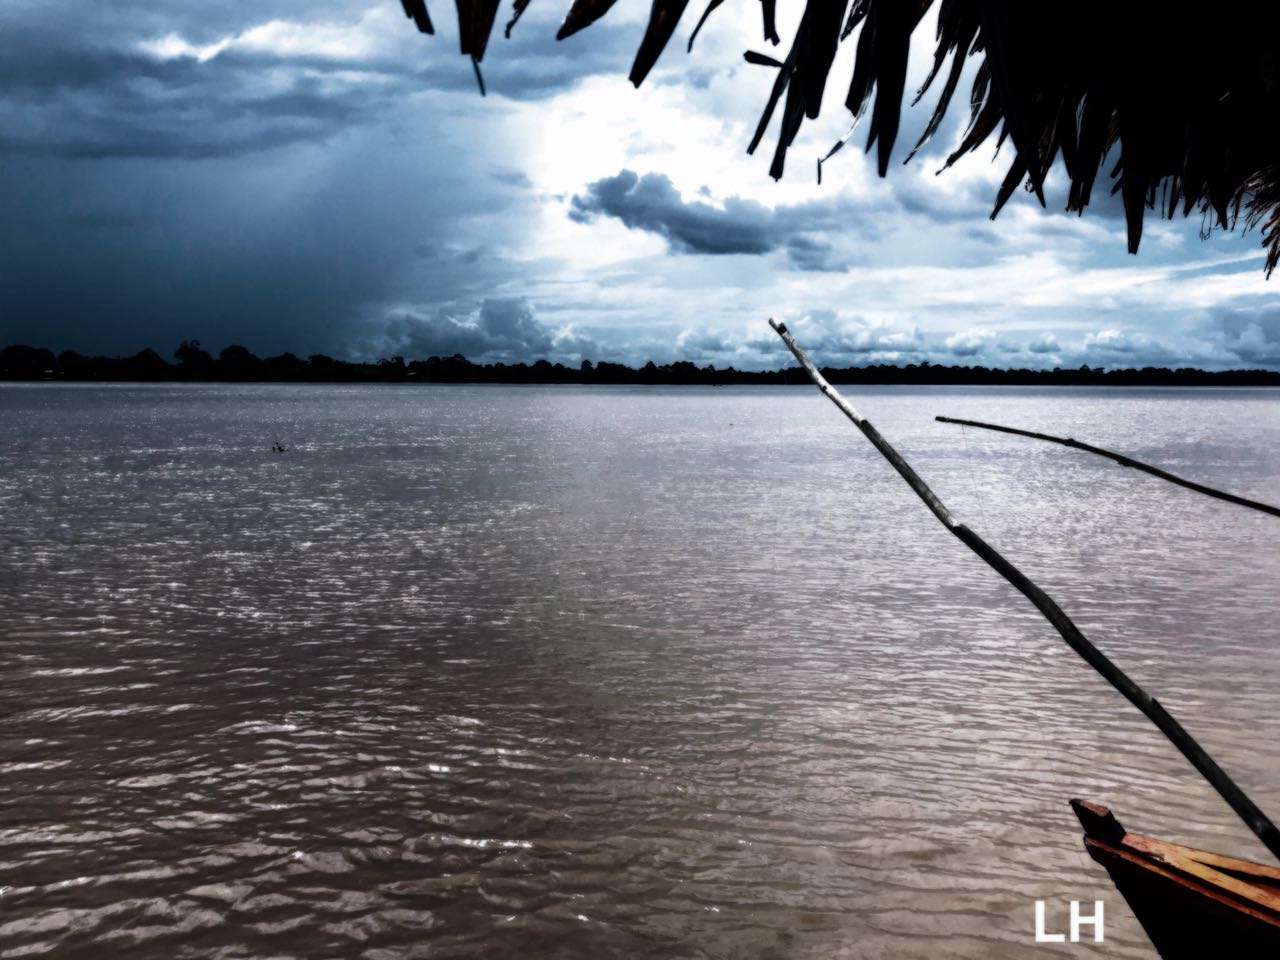 Personas pescando a orilla del rio Amazonas